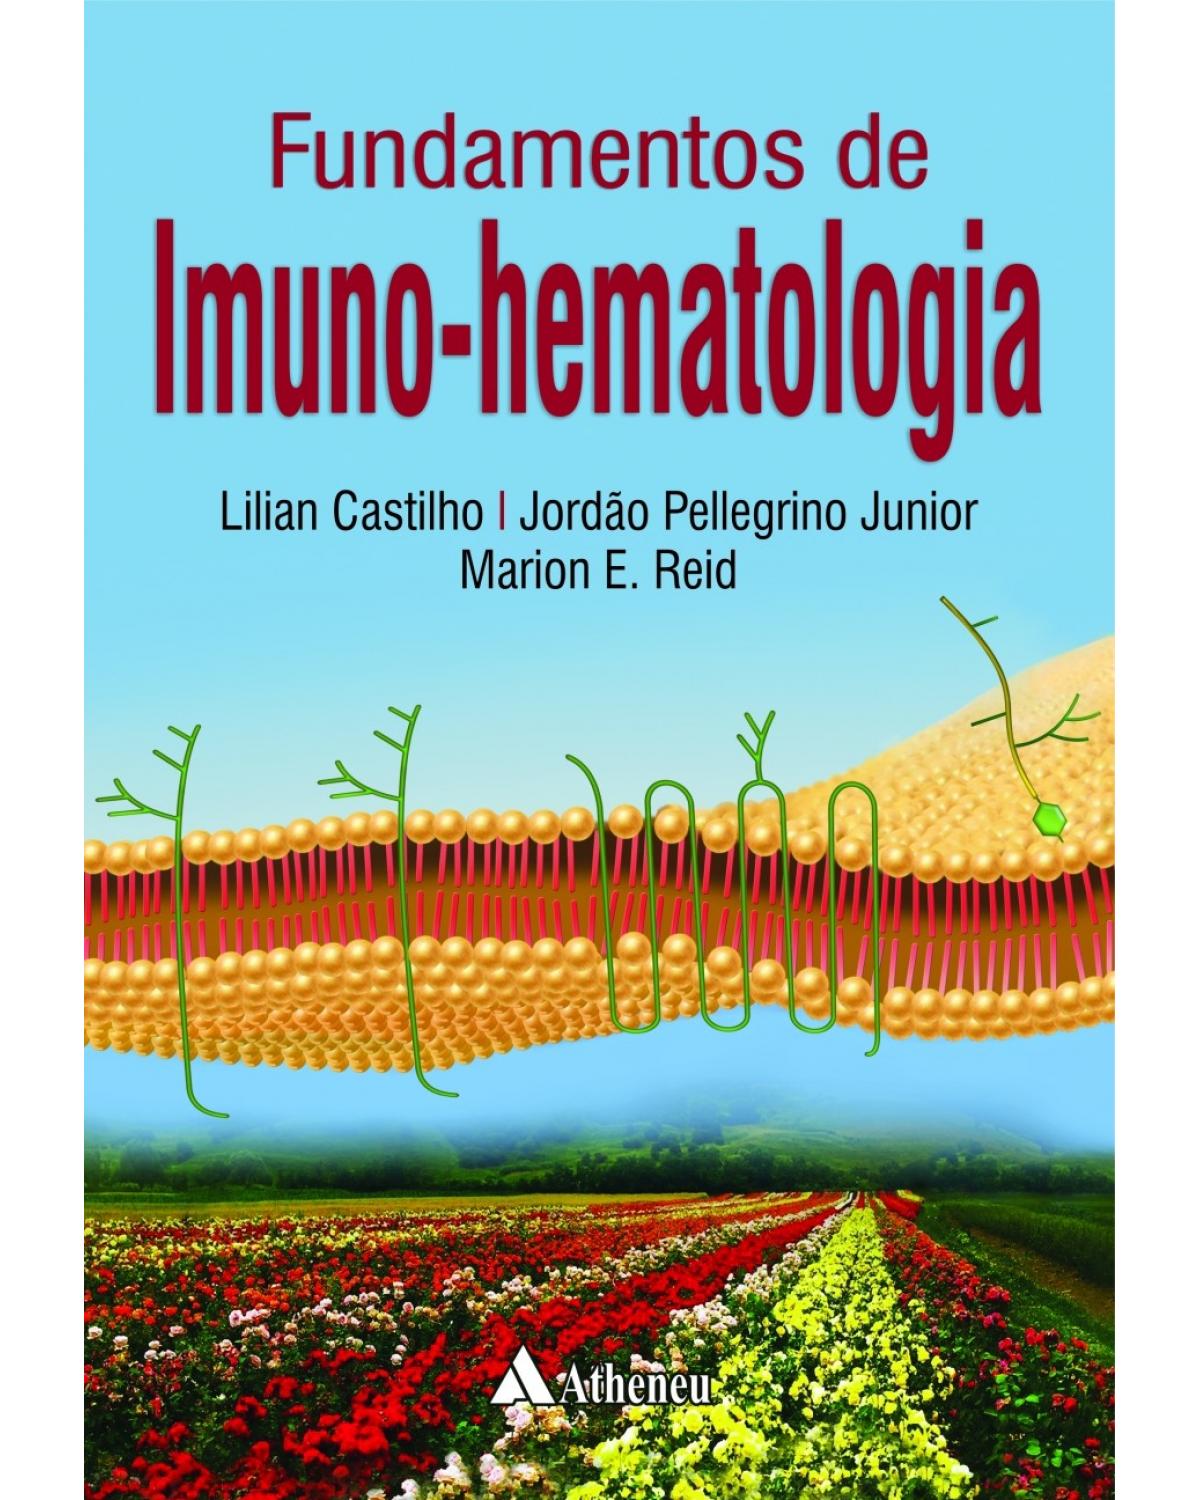 Fundamentos de imuno-hematologia - 1ª Edição | 2015